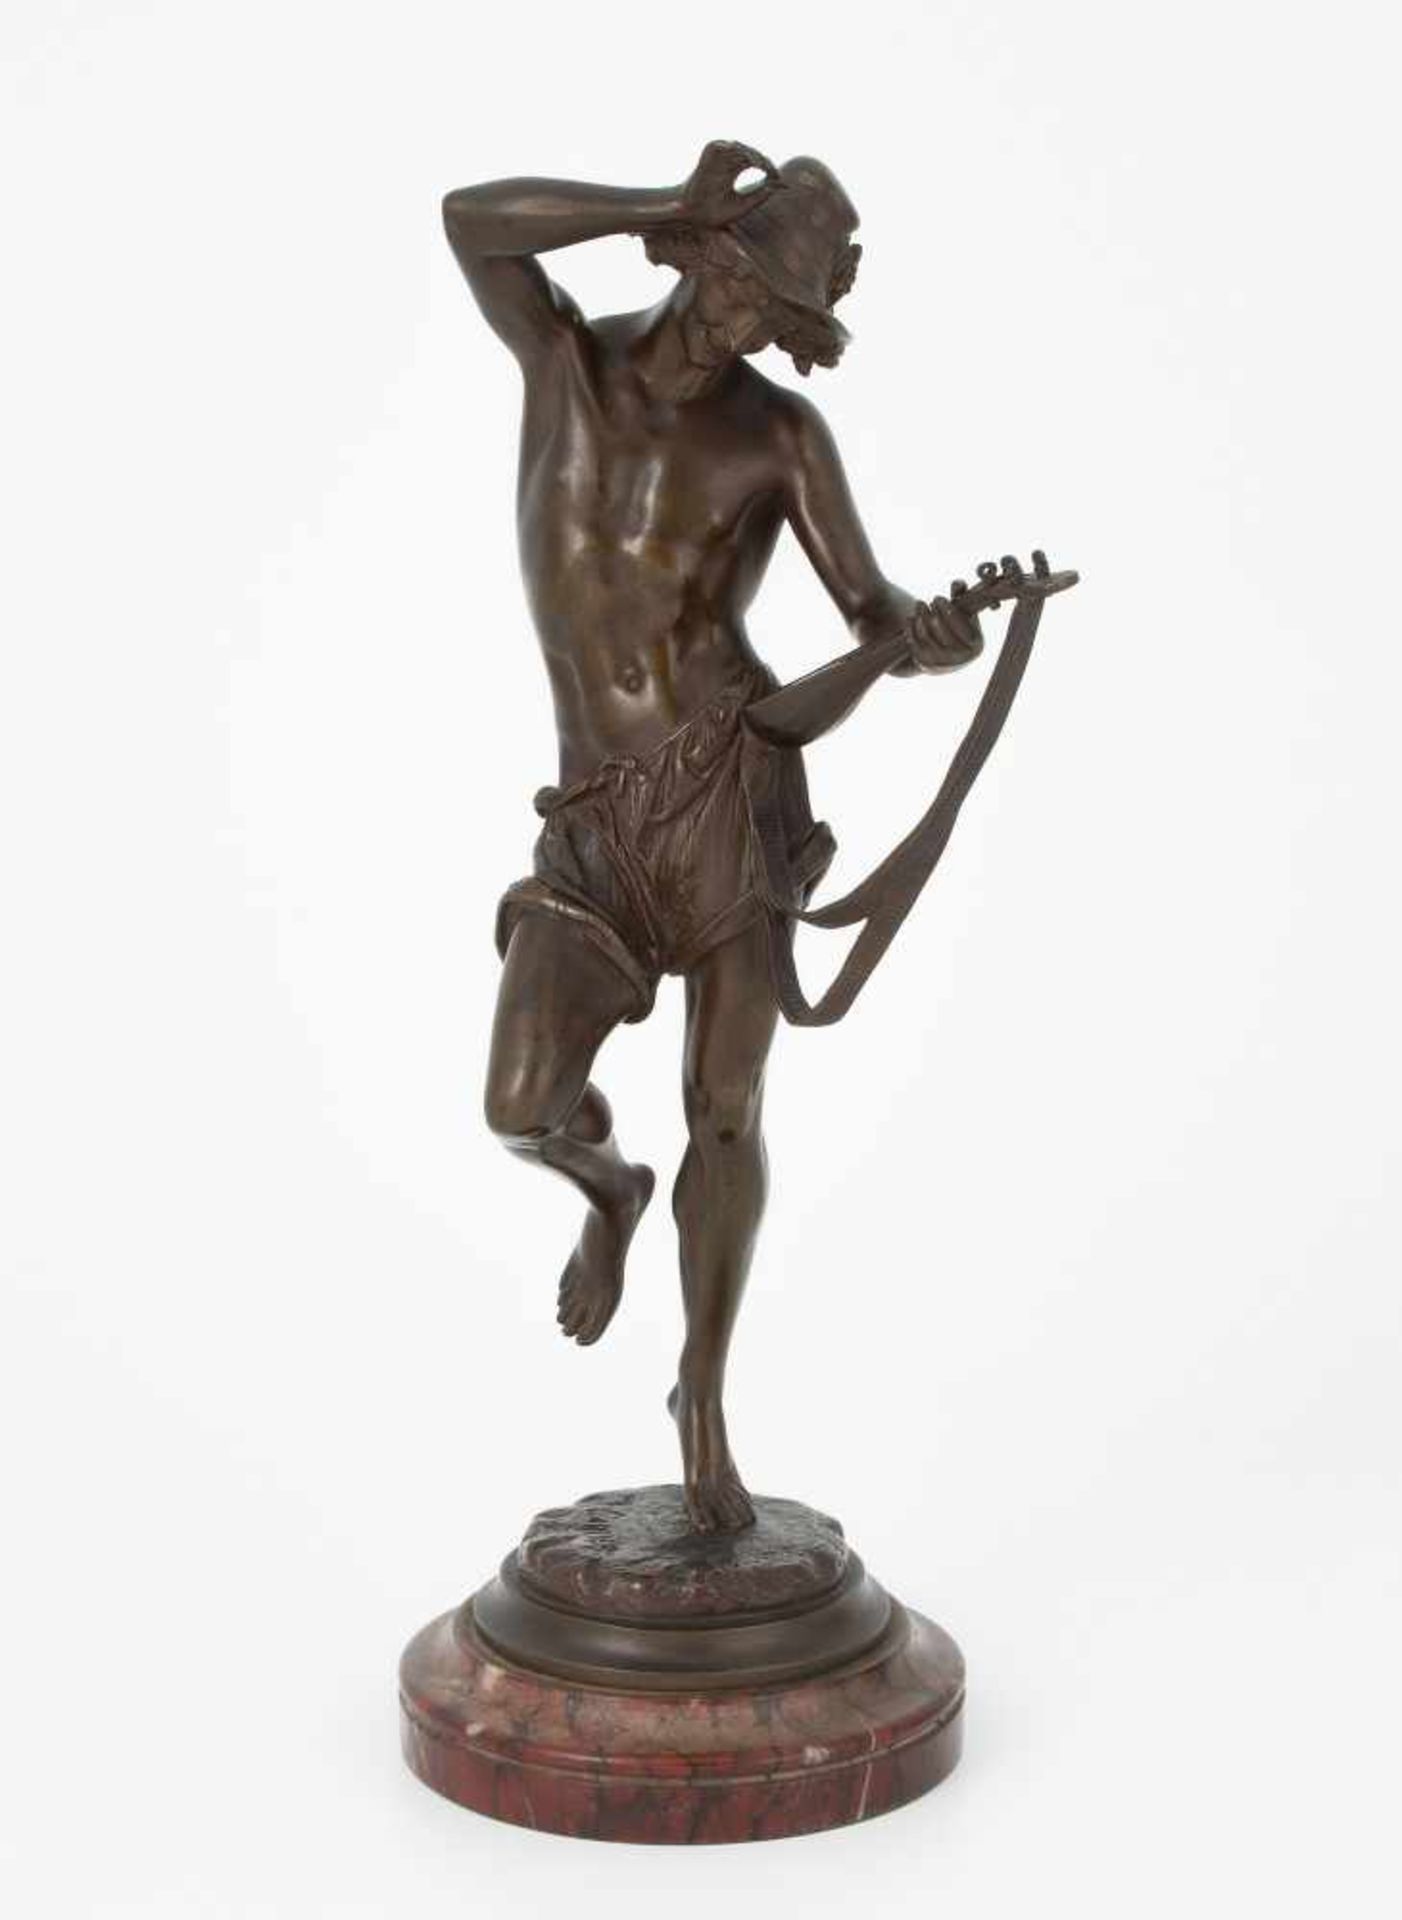 Figur "Danseur napolitain"Frankreich, Ende 19.Jh. Nach dem Modell von Albert Ernest Carrier-Belleuse